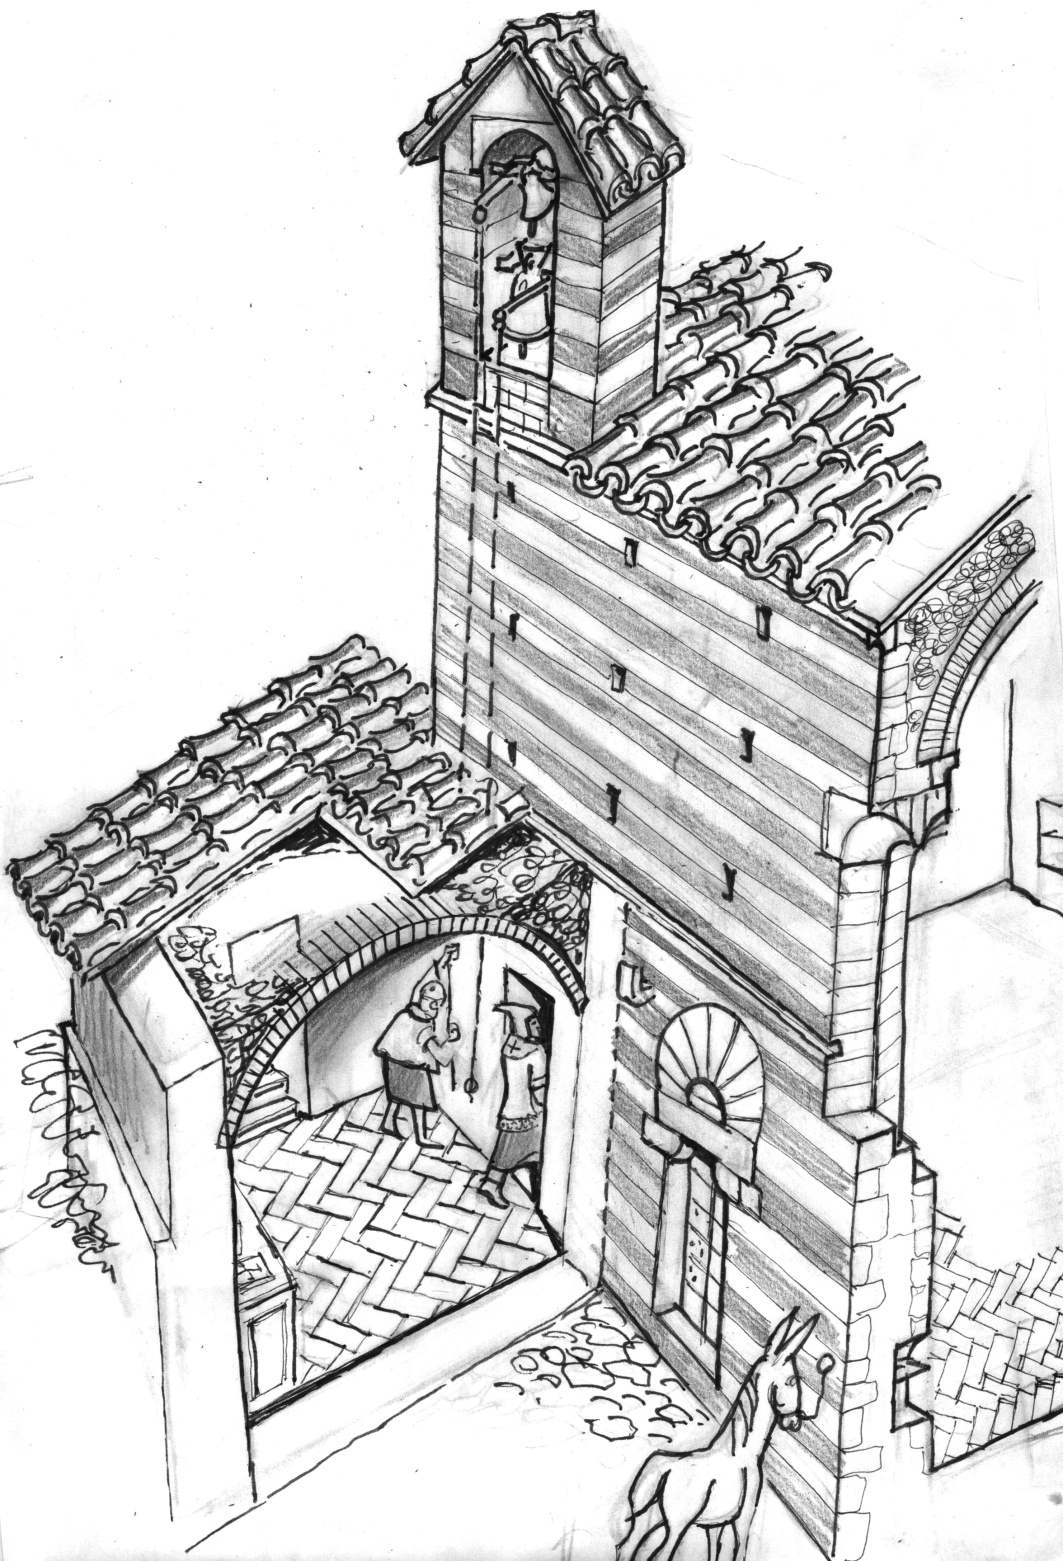 La ricostruzione della sacrestia e della posizione della veletta del campanile